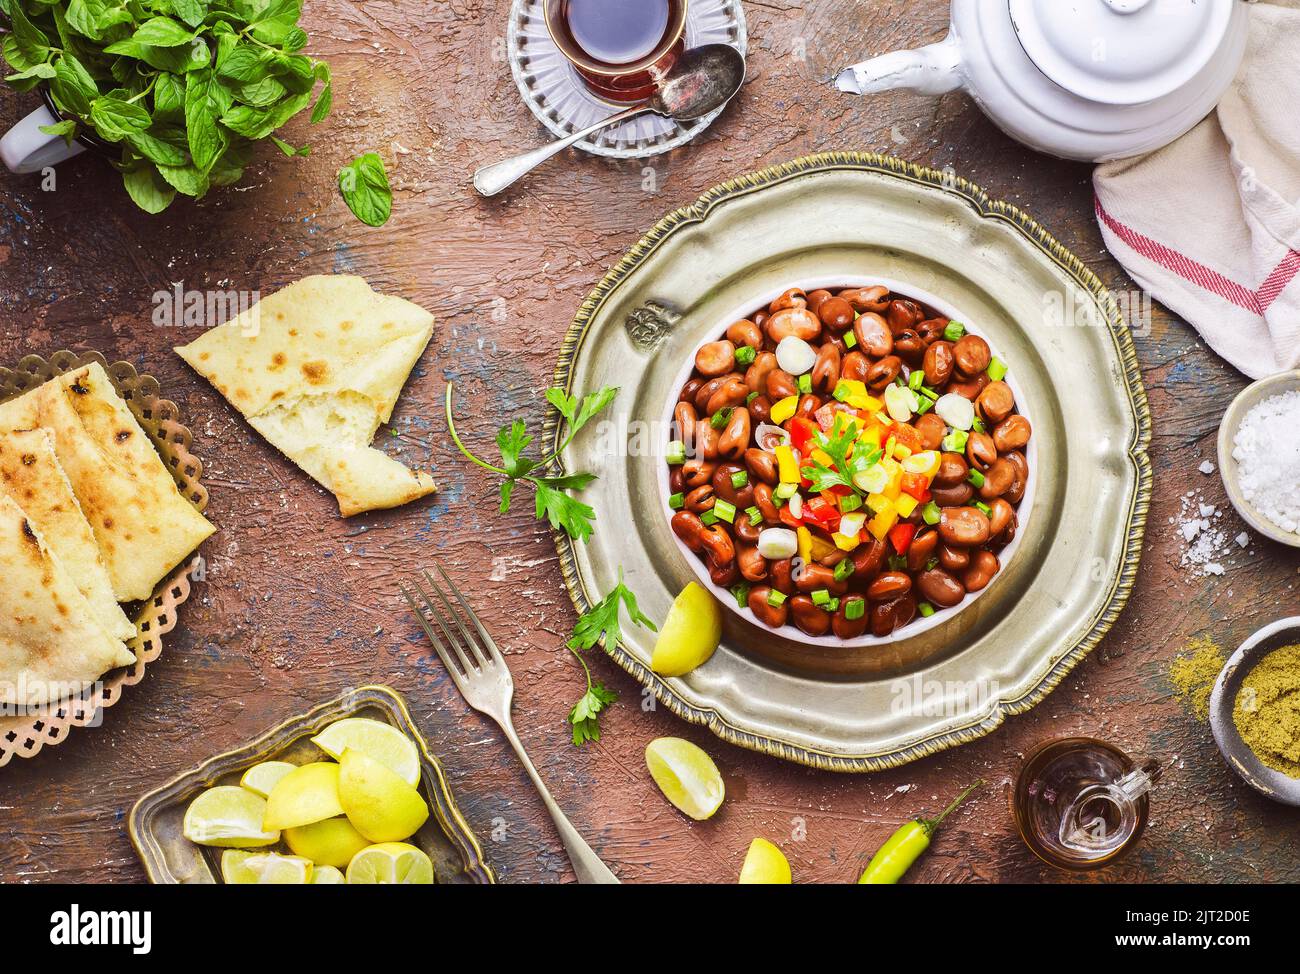 Cucina araba; piatto tradizionale egiziano 'Ful medames'. Colazione deliziosa mediorientale con fave cotte. Foto Stock